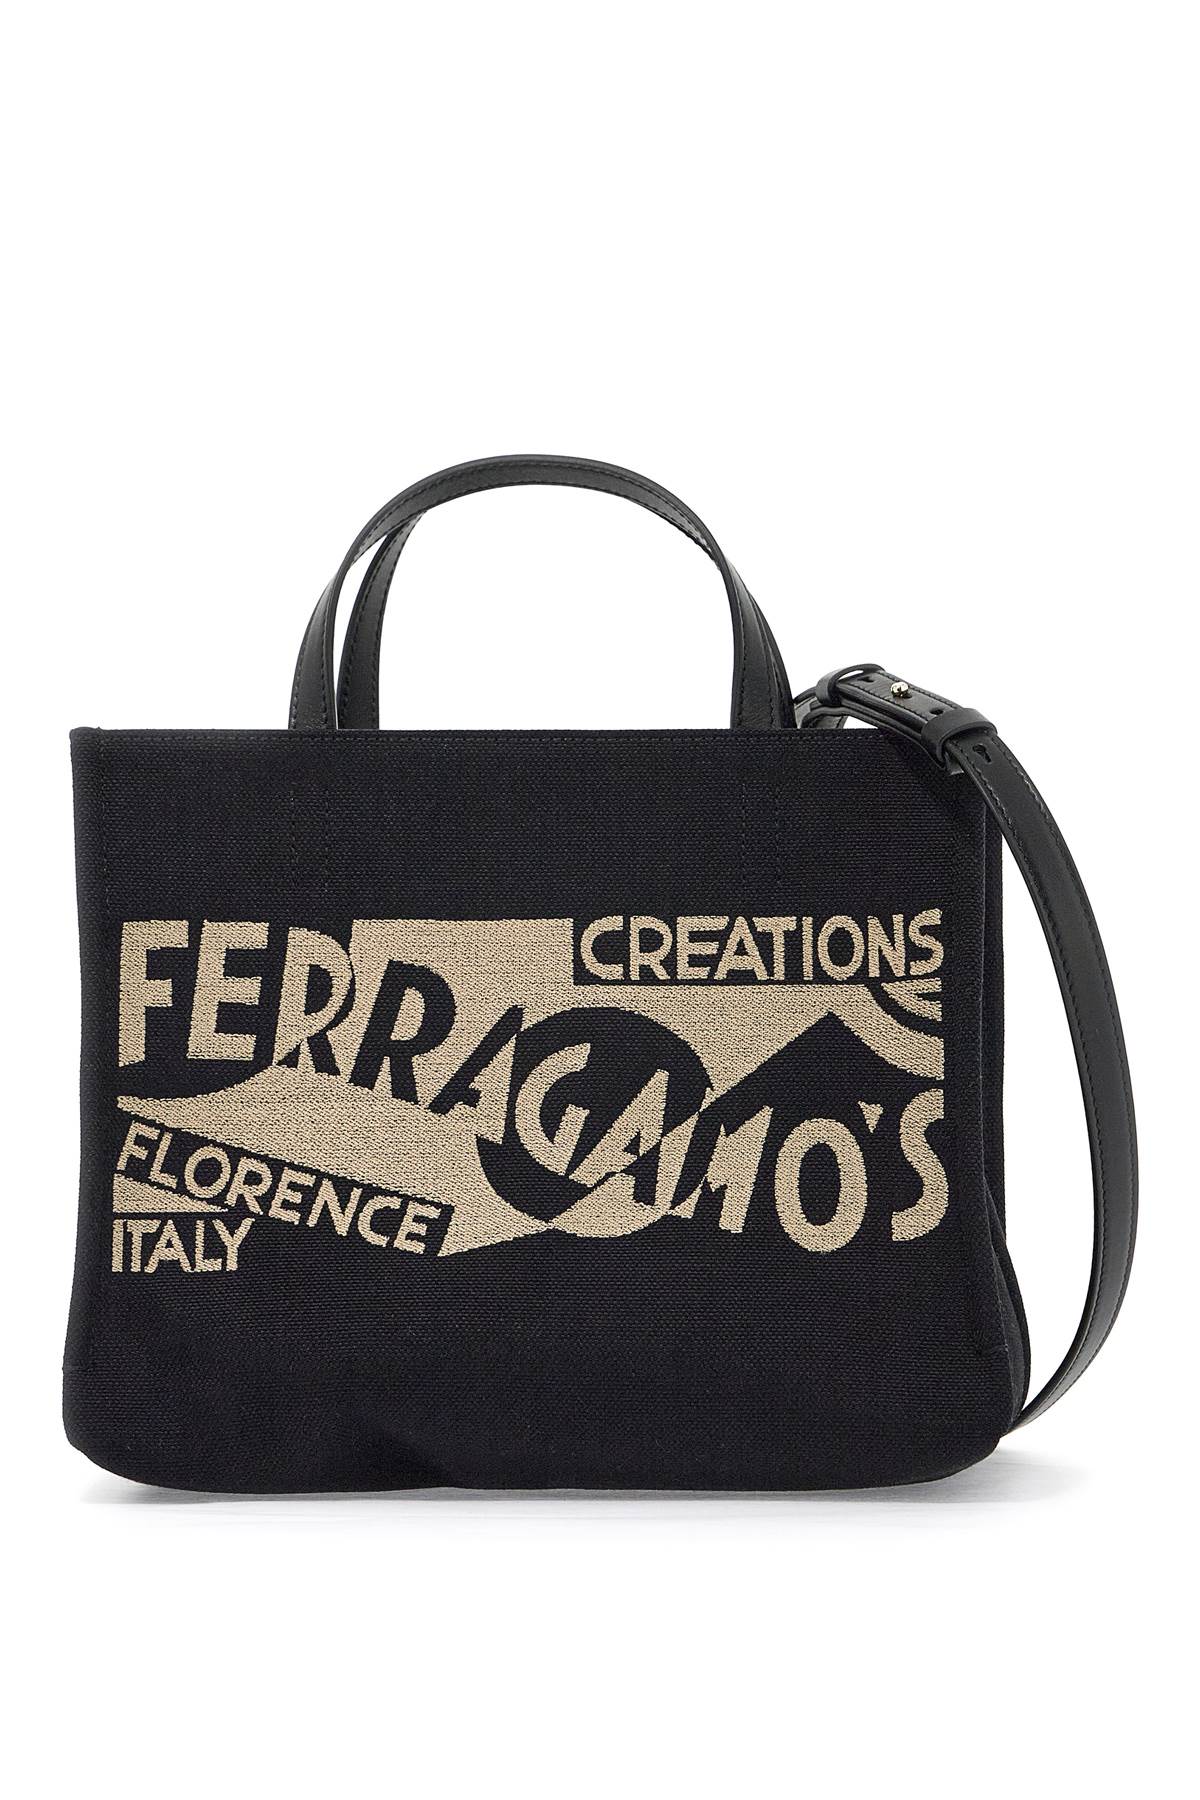 Ferragamo FERRAGAMO logo printed small tote bag